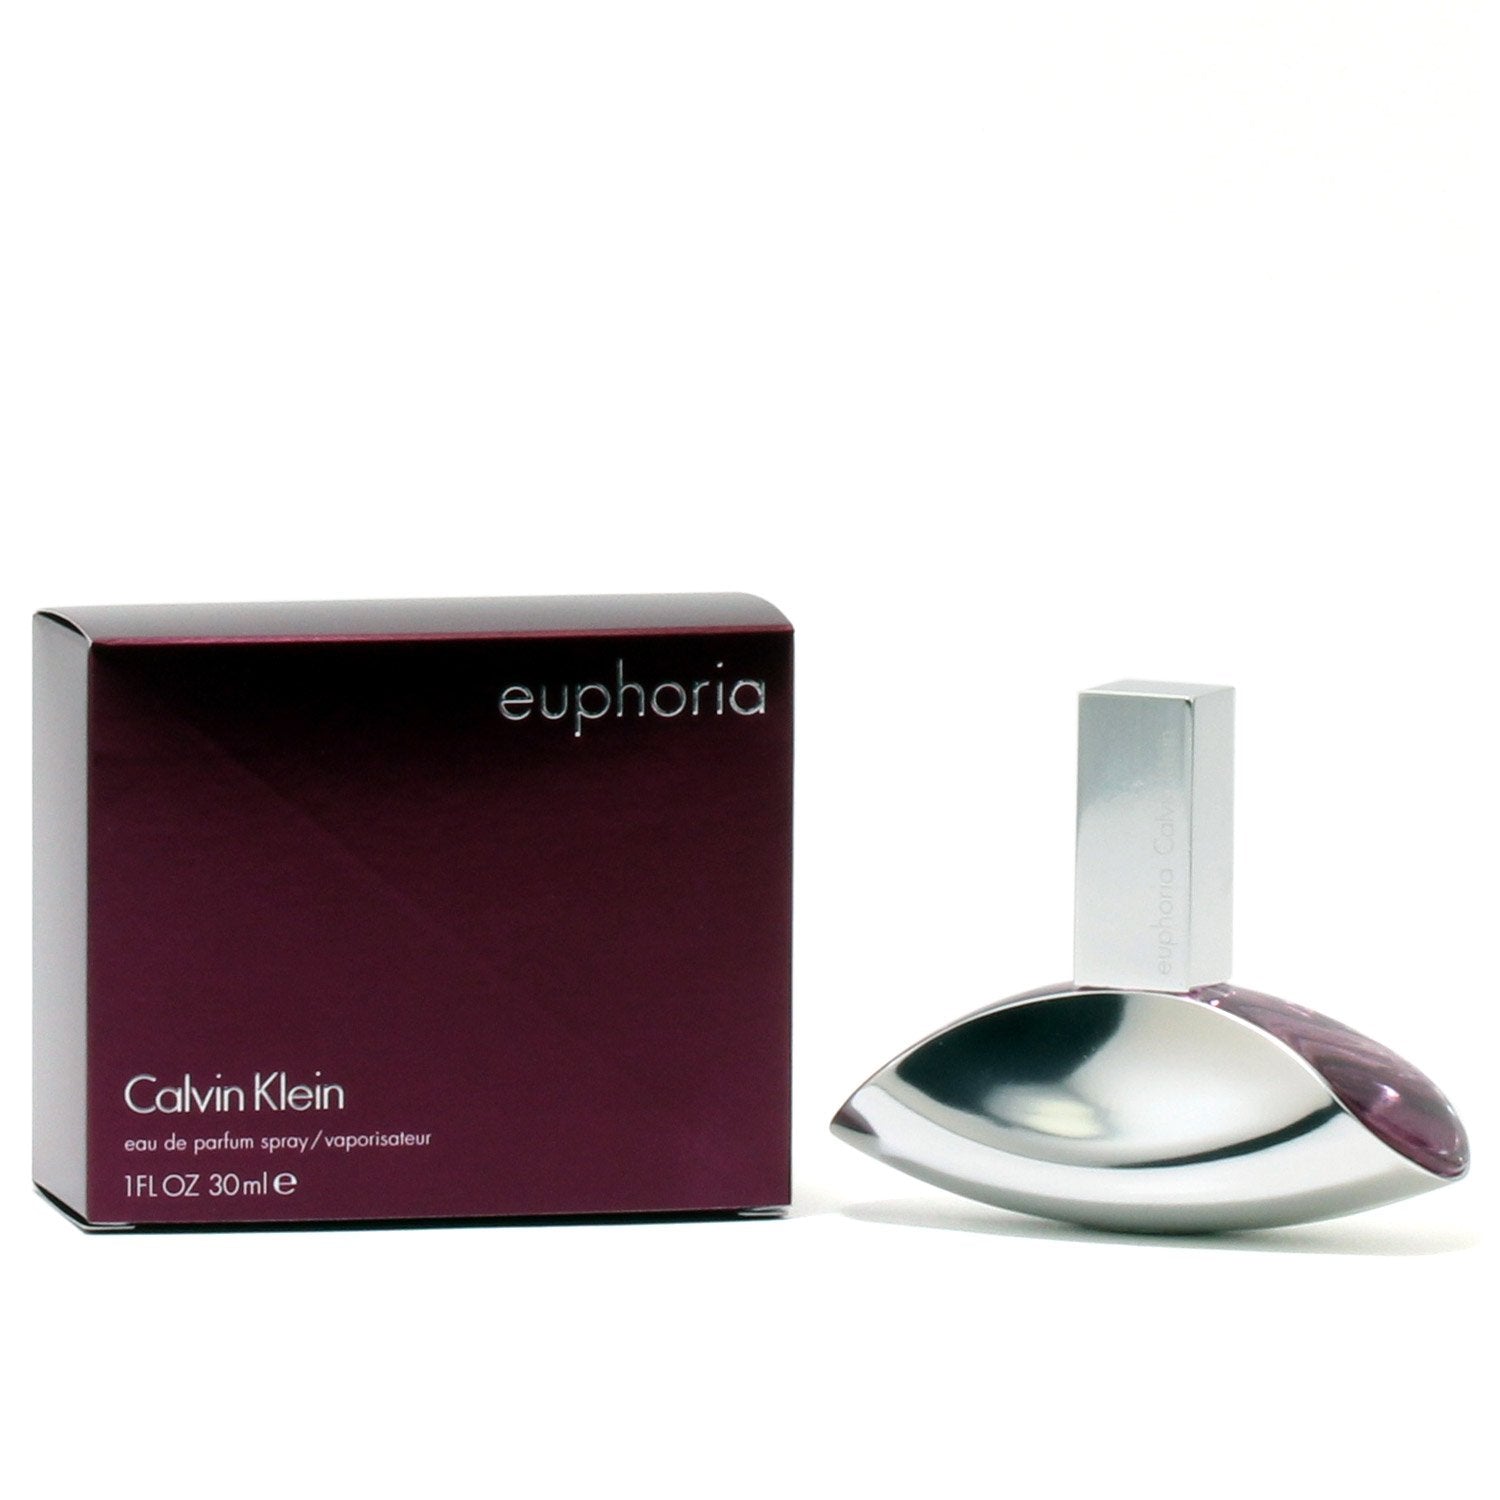 EUPHORIA MEN BY CALVIN KLEIN - EAU DE TOILETTE SPRAY – Fragrance Room